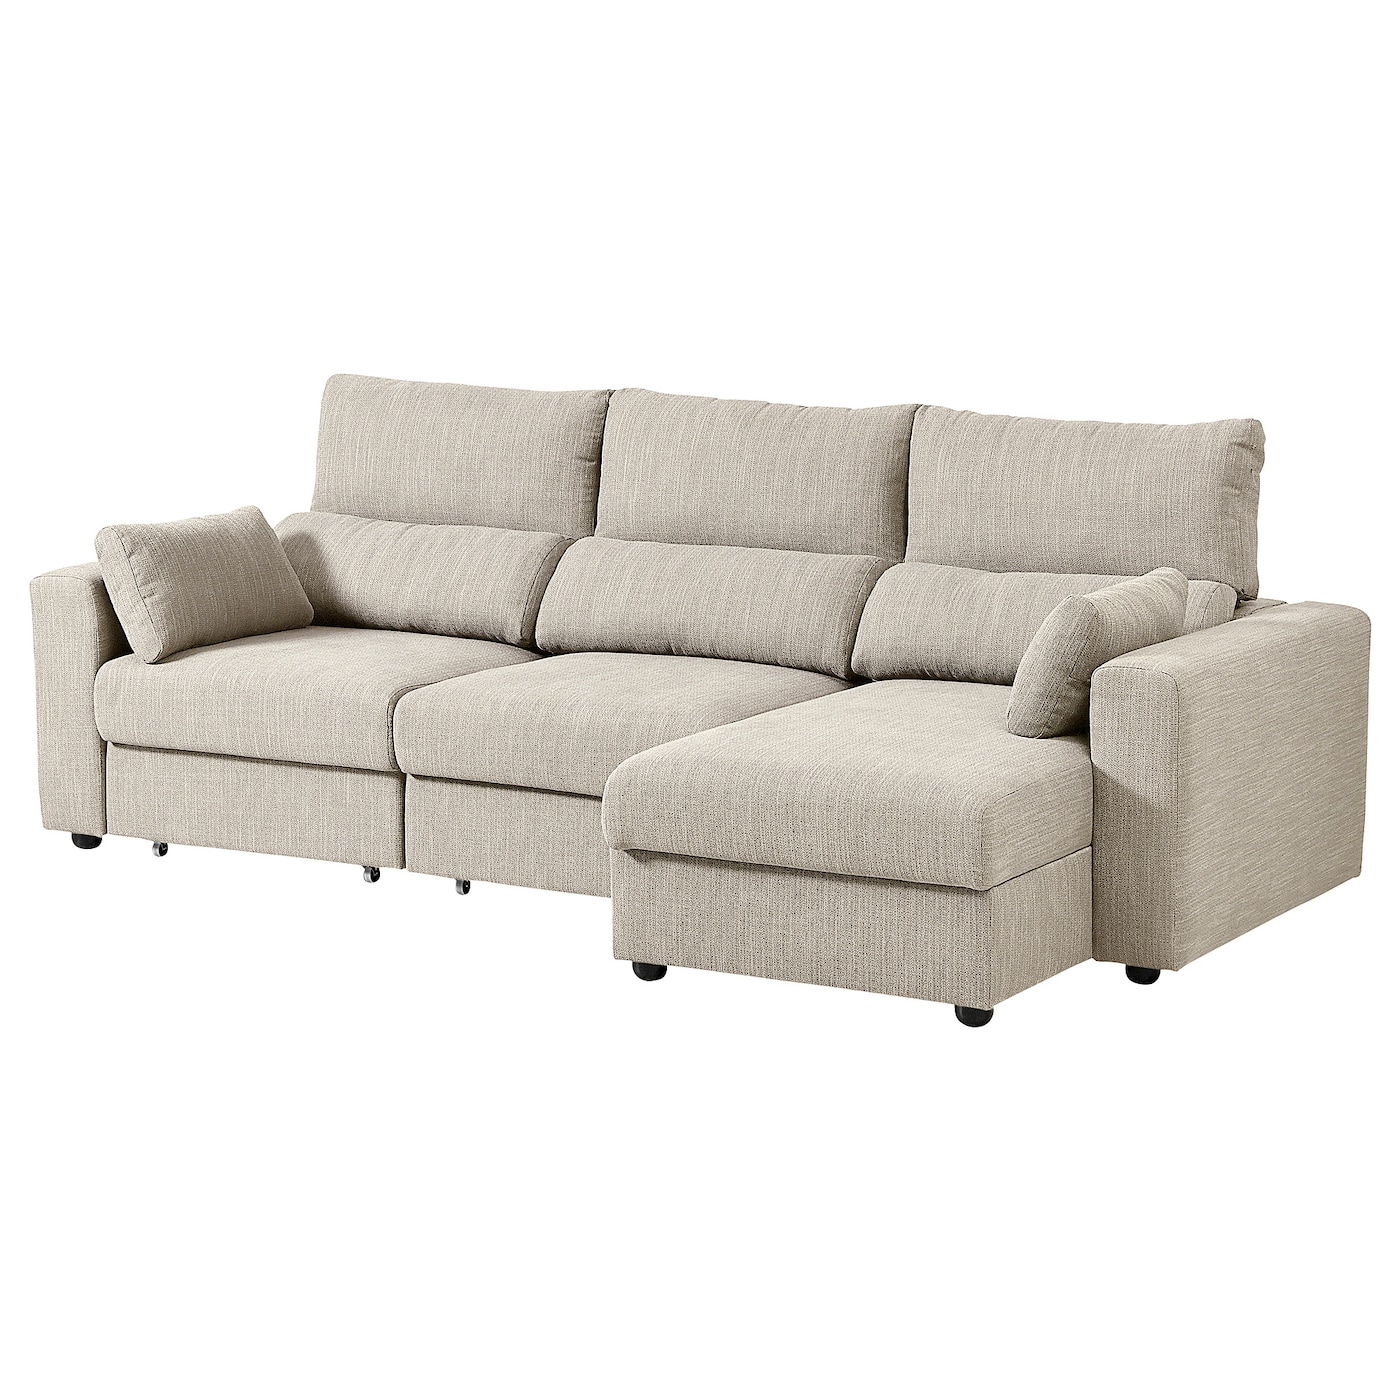 3-местный диван - IKEA ESKILSTUNA/ЭСКИЛЬСТУНА ИКЕА, 268х109х100 см, бежевый